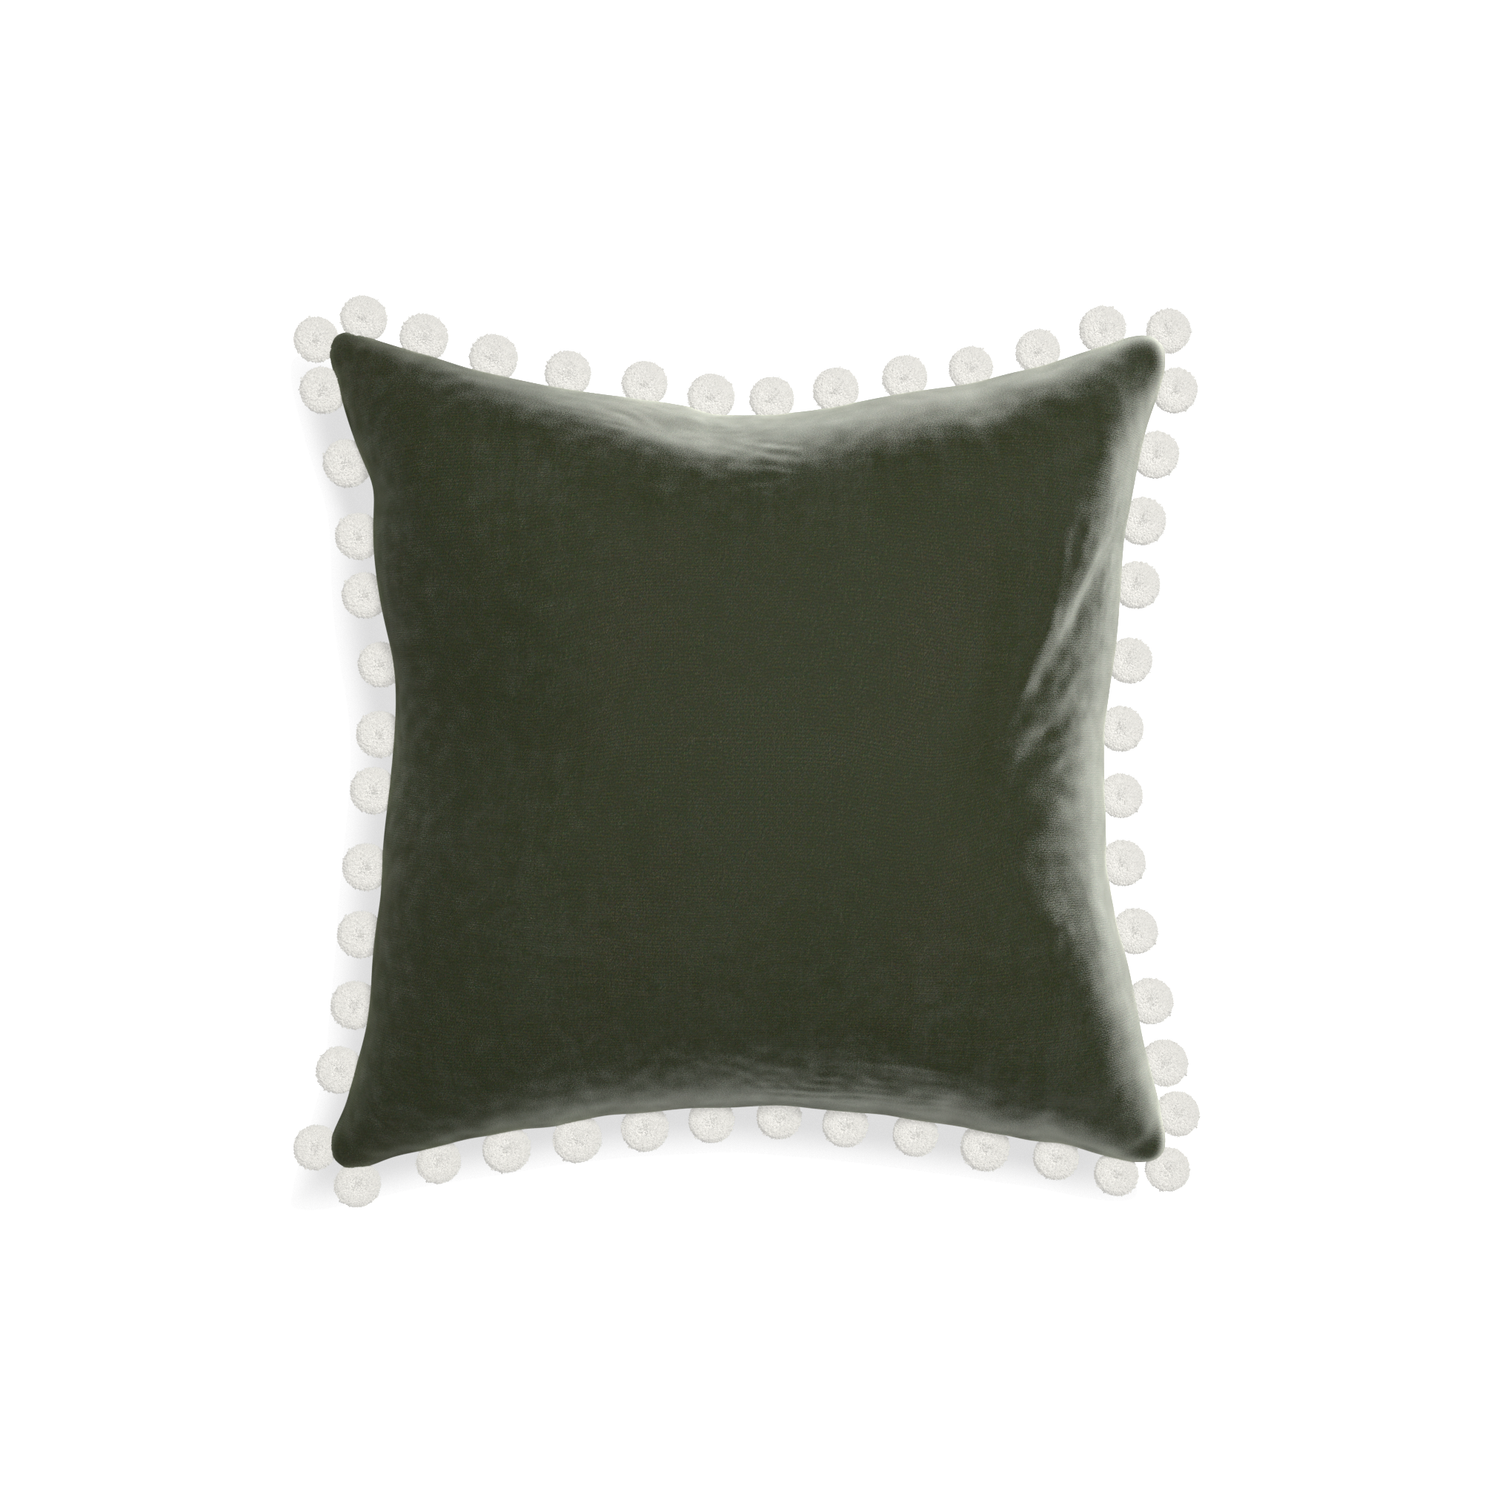 square fern green velvet pillow with white pom poms